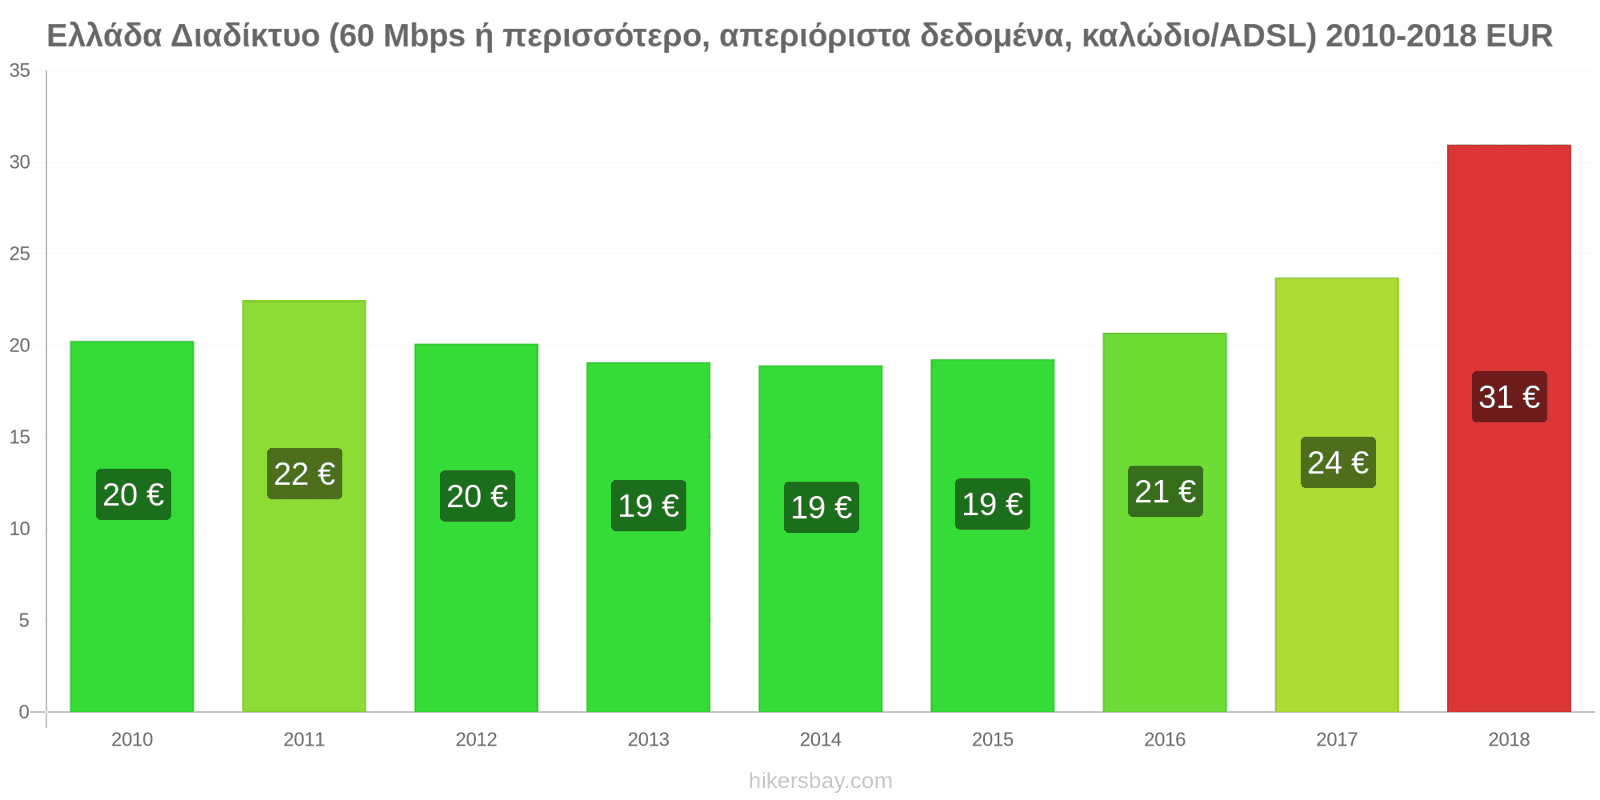 Ελλάδα αλλαγές τιμών Ίντερνετ (60 Mbps ή περισσότερο, απεριόριστα δεδομένα, καλώδιο/ADSL) hikersbay.com